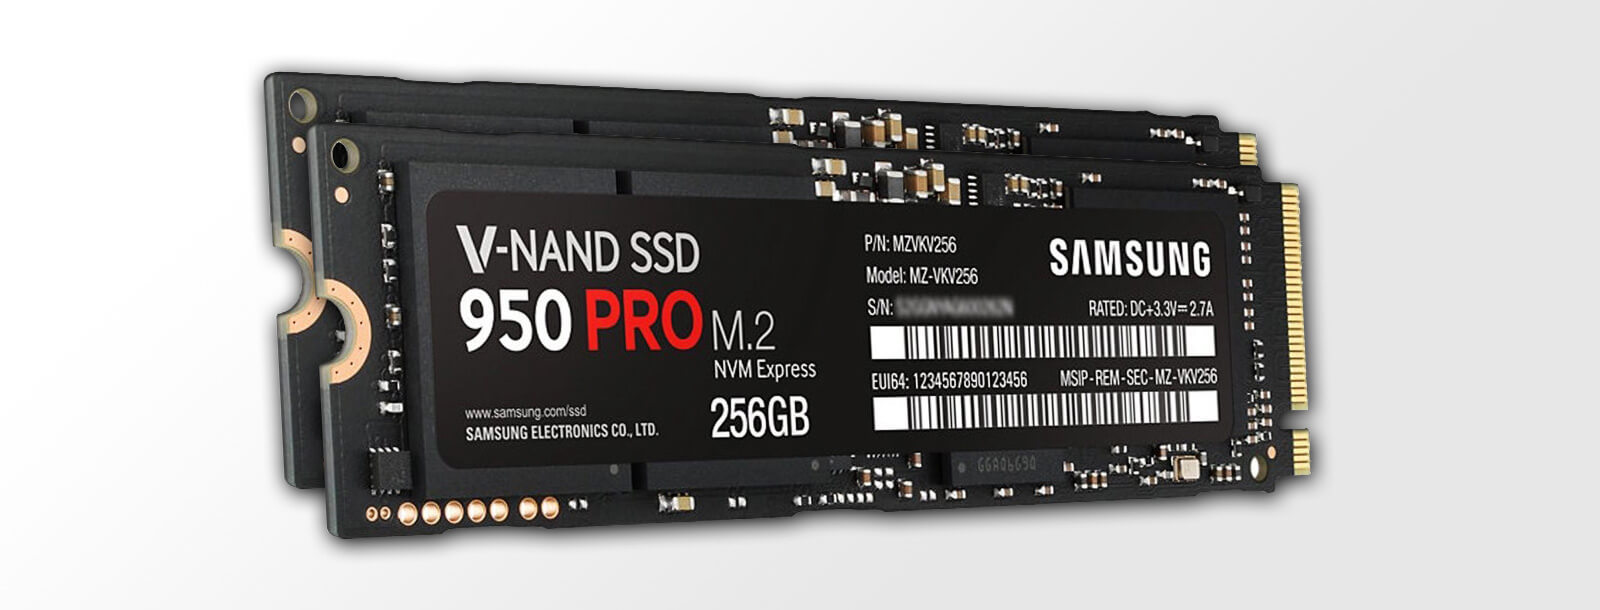 Tilføj til mund Skæbne What SSD RAID 0 stripe size? Resolved.